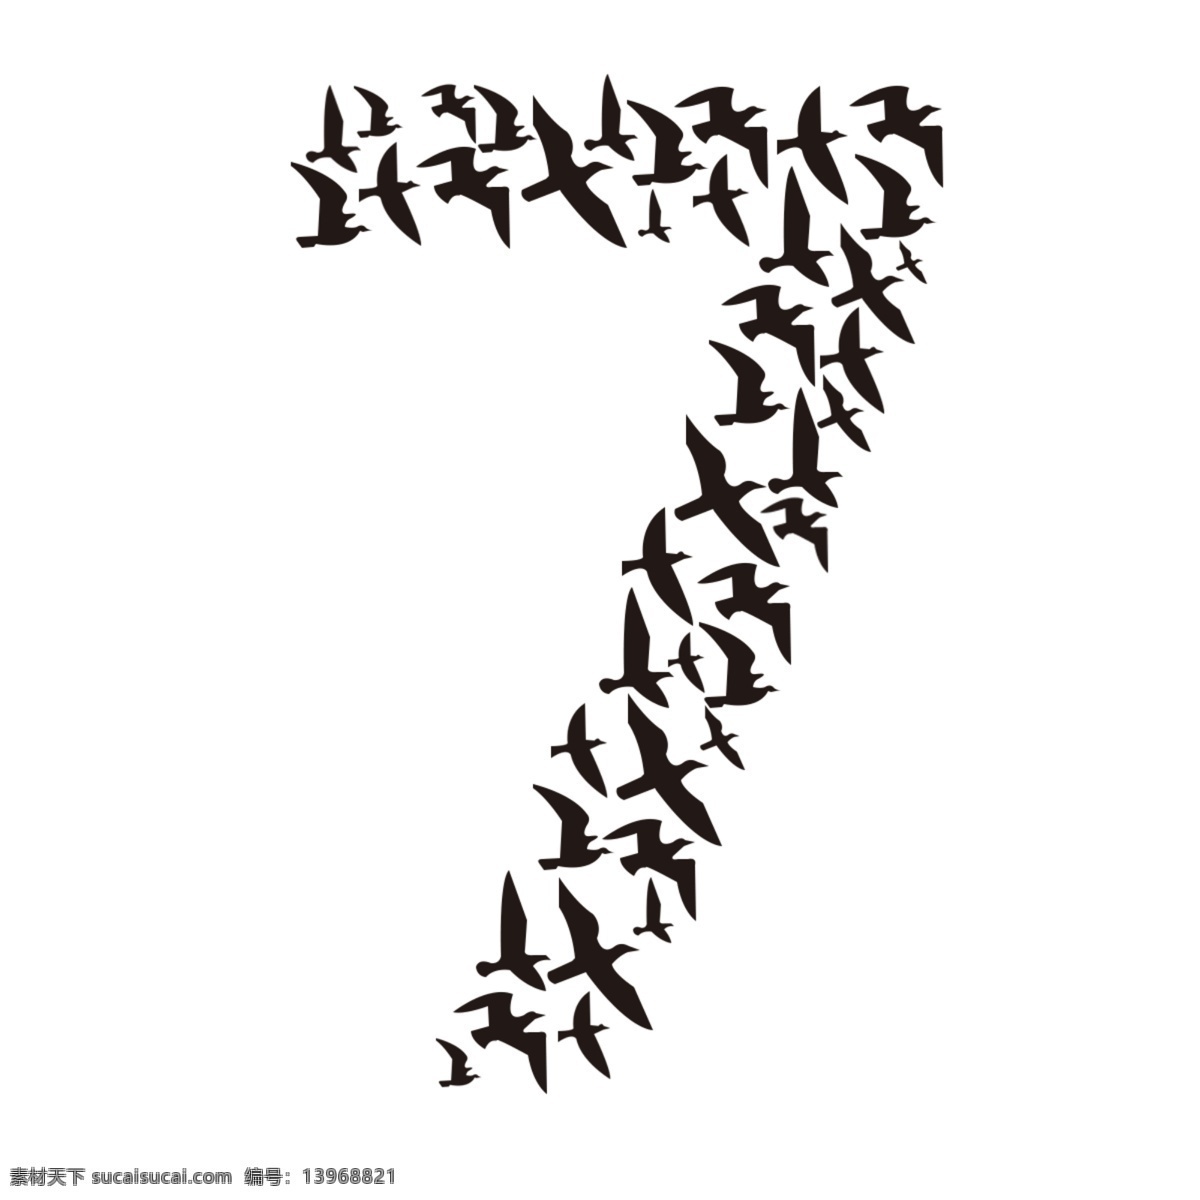 黑色 剪 影集 鸟 轮廓 极 简 创意设计 艺术 图案 图形 聚集 形状 纹理